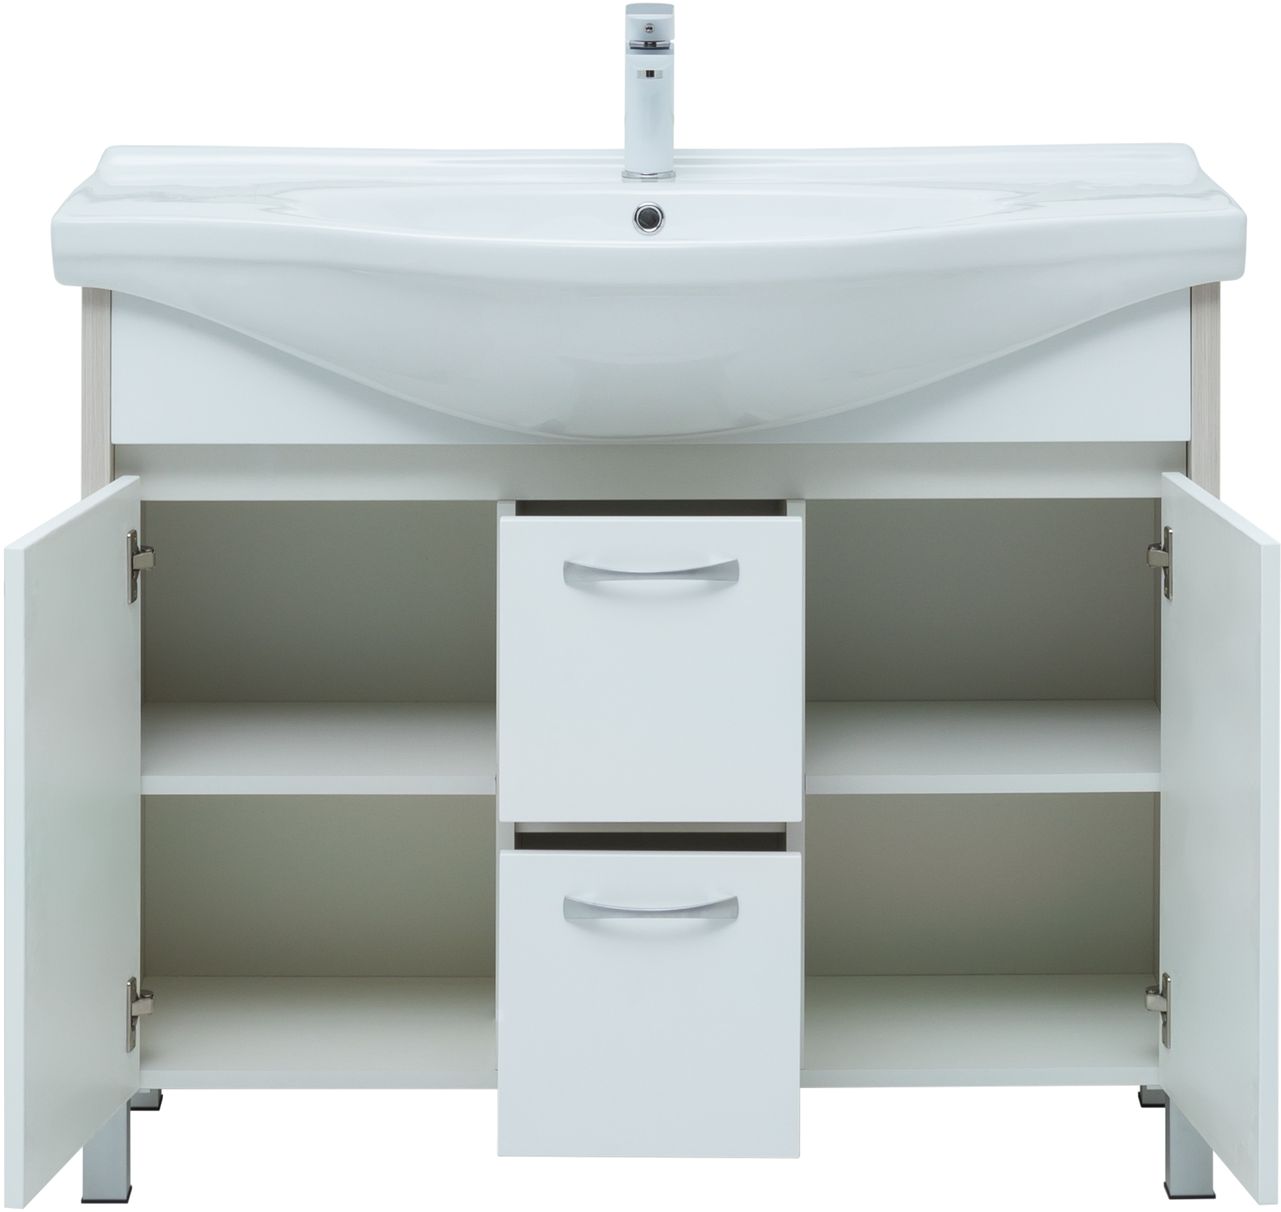 Мебель для ванной Aquanet Донна 102 см напольная 2 ящика и 2 дверцы, дуб, белый, цвет хром 274164 - фото 3